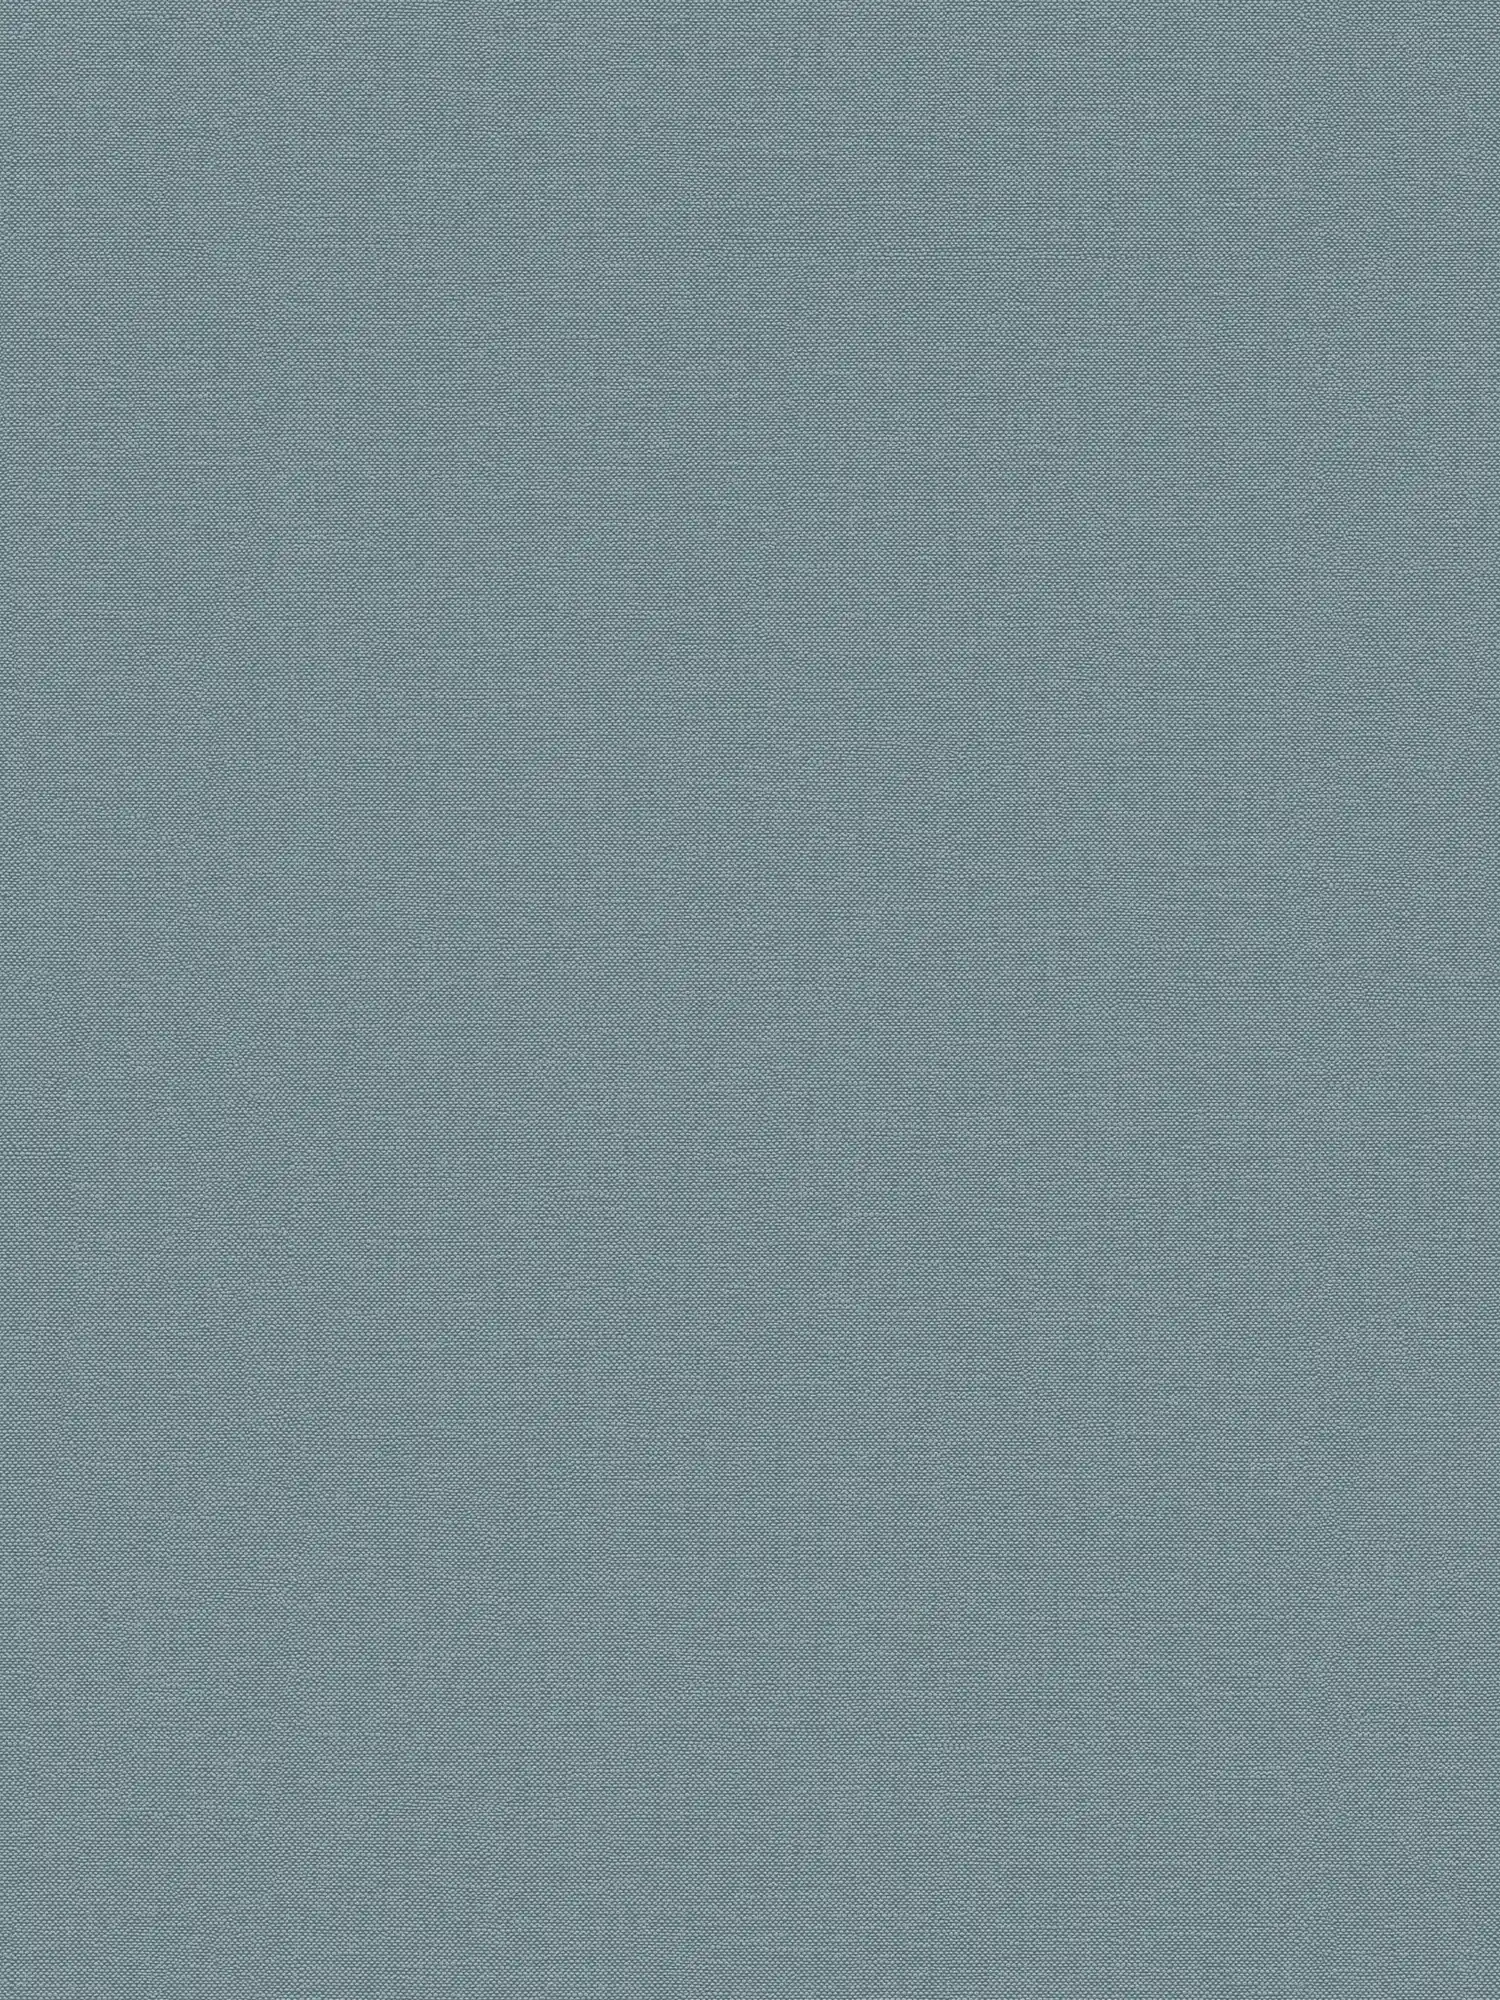 papier peint en papier uni avec structure tissée mat - bleu
